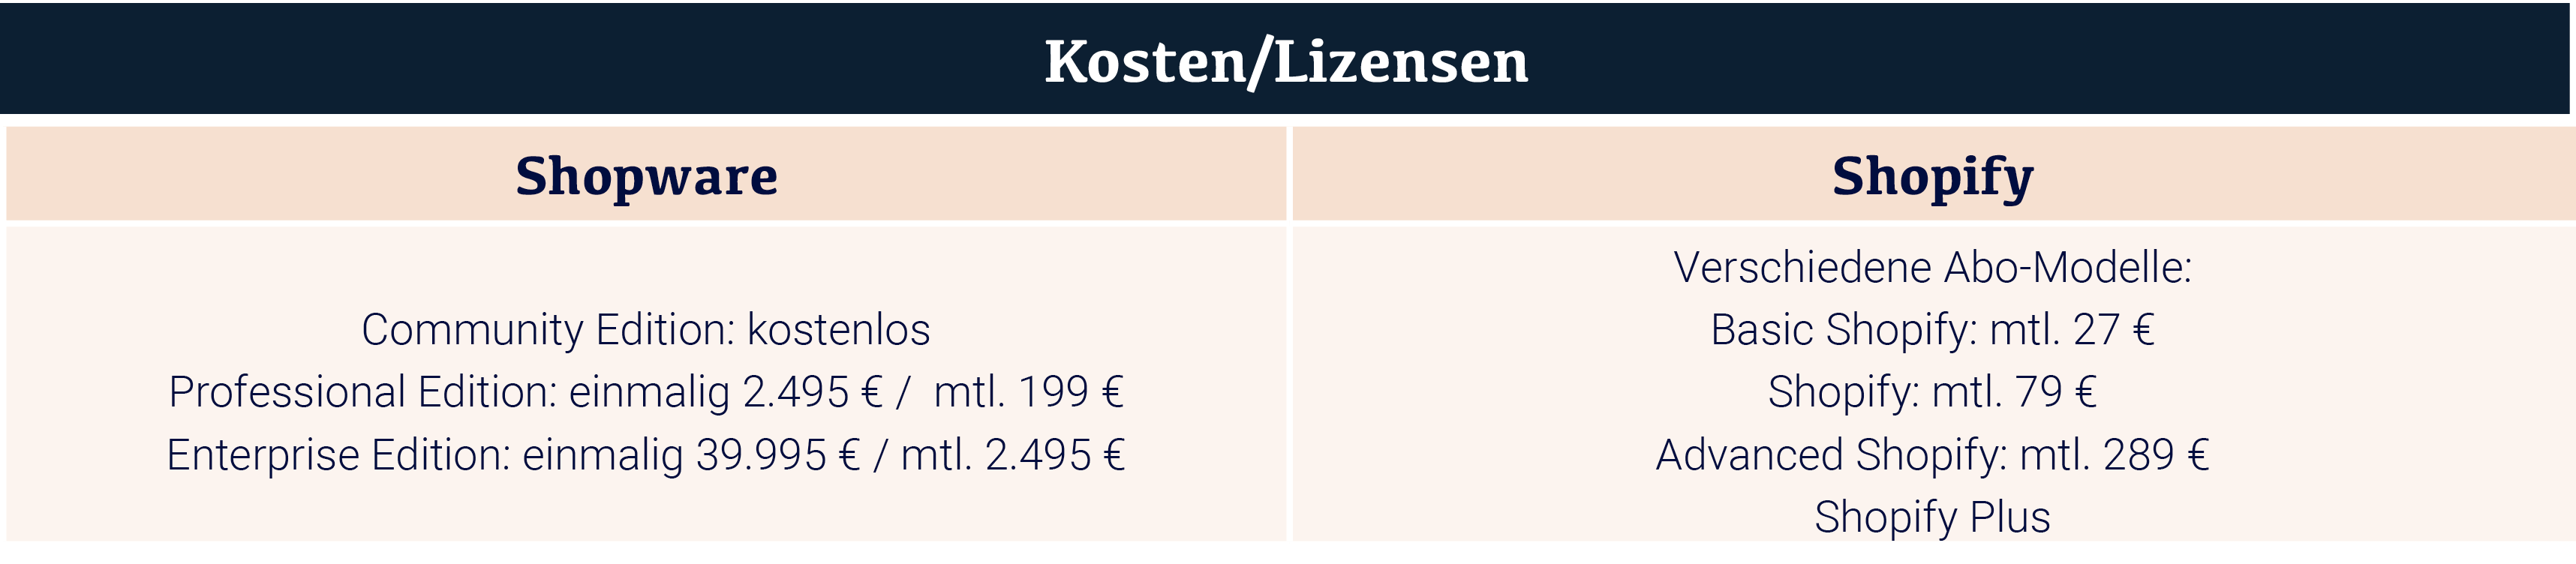 Kosten/Lizensen